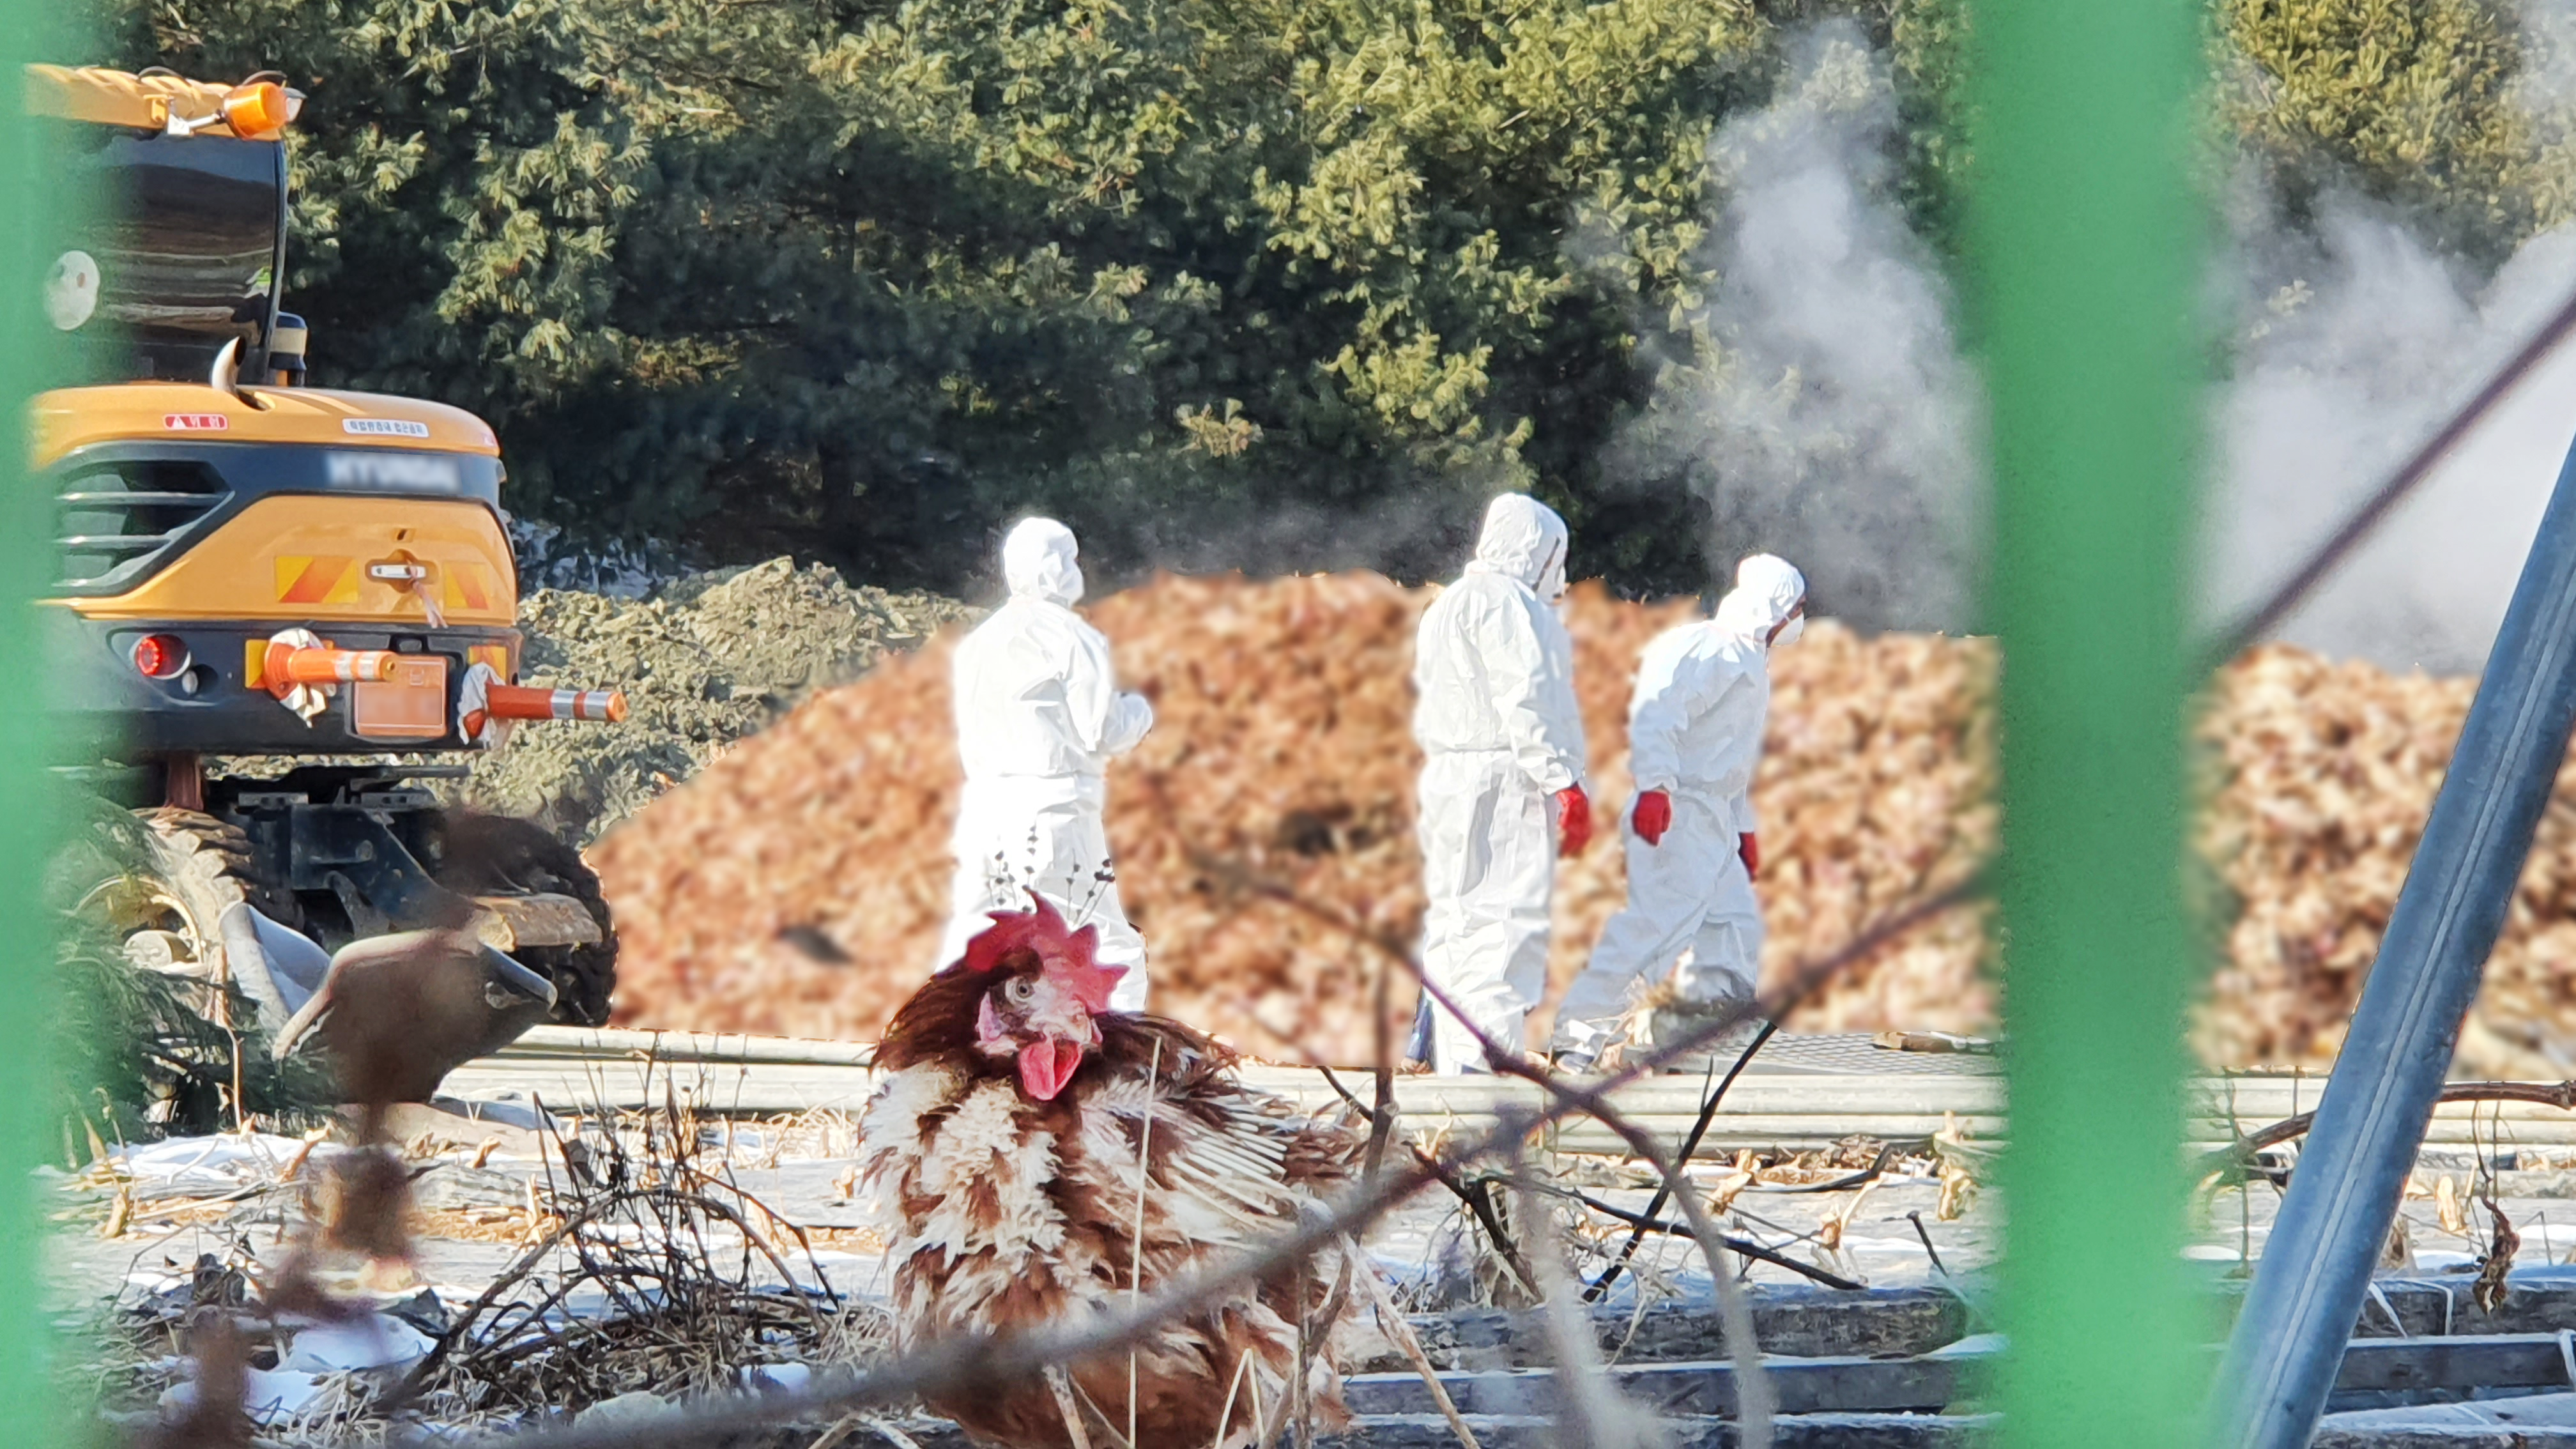  지난 20일, 충북 음성군의 한 산란계 농장에서 닭 40만 마리가 긴급 처분됐다.  매몰 직전 살아남은 닭 한 마리가  산더미처럼 쌓여 있는 사체 앞을 서성거리고 있다. / 사진 함영구 기자 newspower@kbs.co.kr 